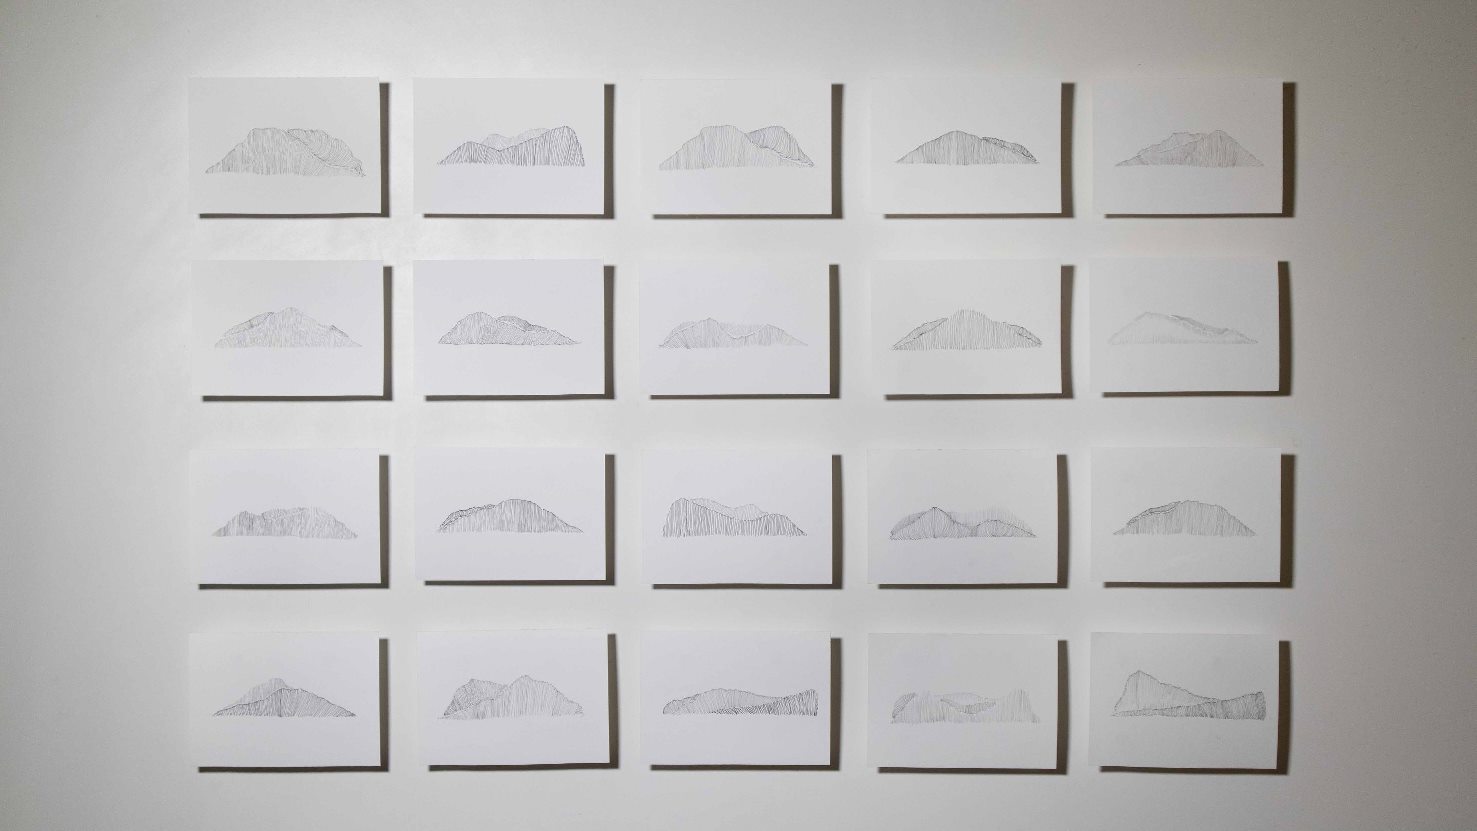 Série Catálogo de paisagens da janela do meu quarto, Anna Moraes, 2020. Desenho, caneta sobre papel 300g, 20x15cm cada.